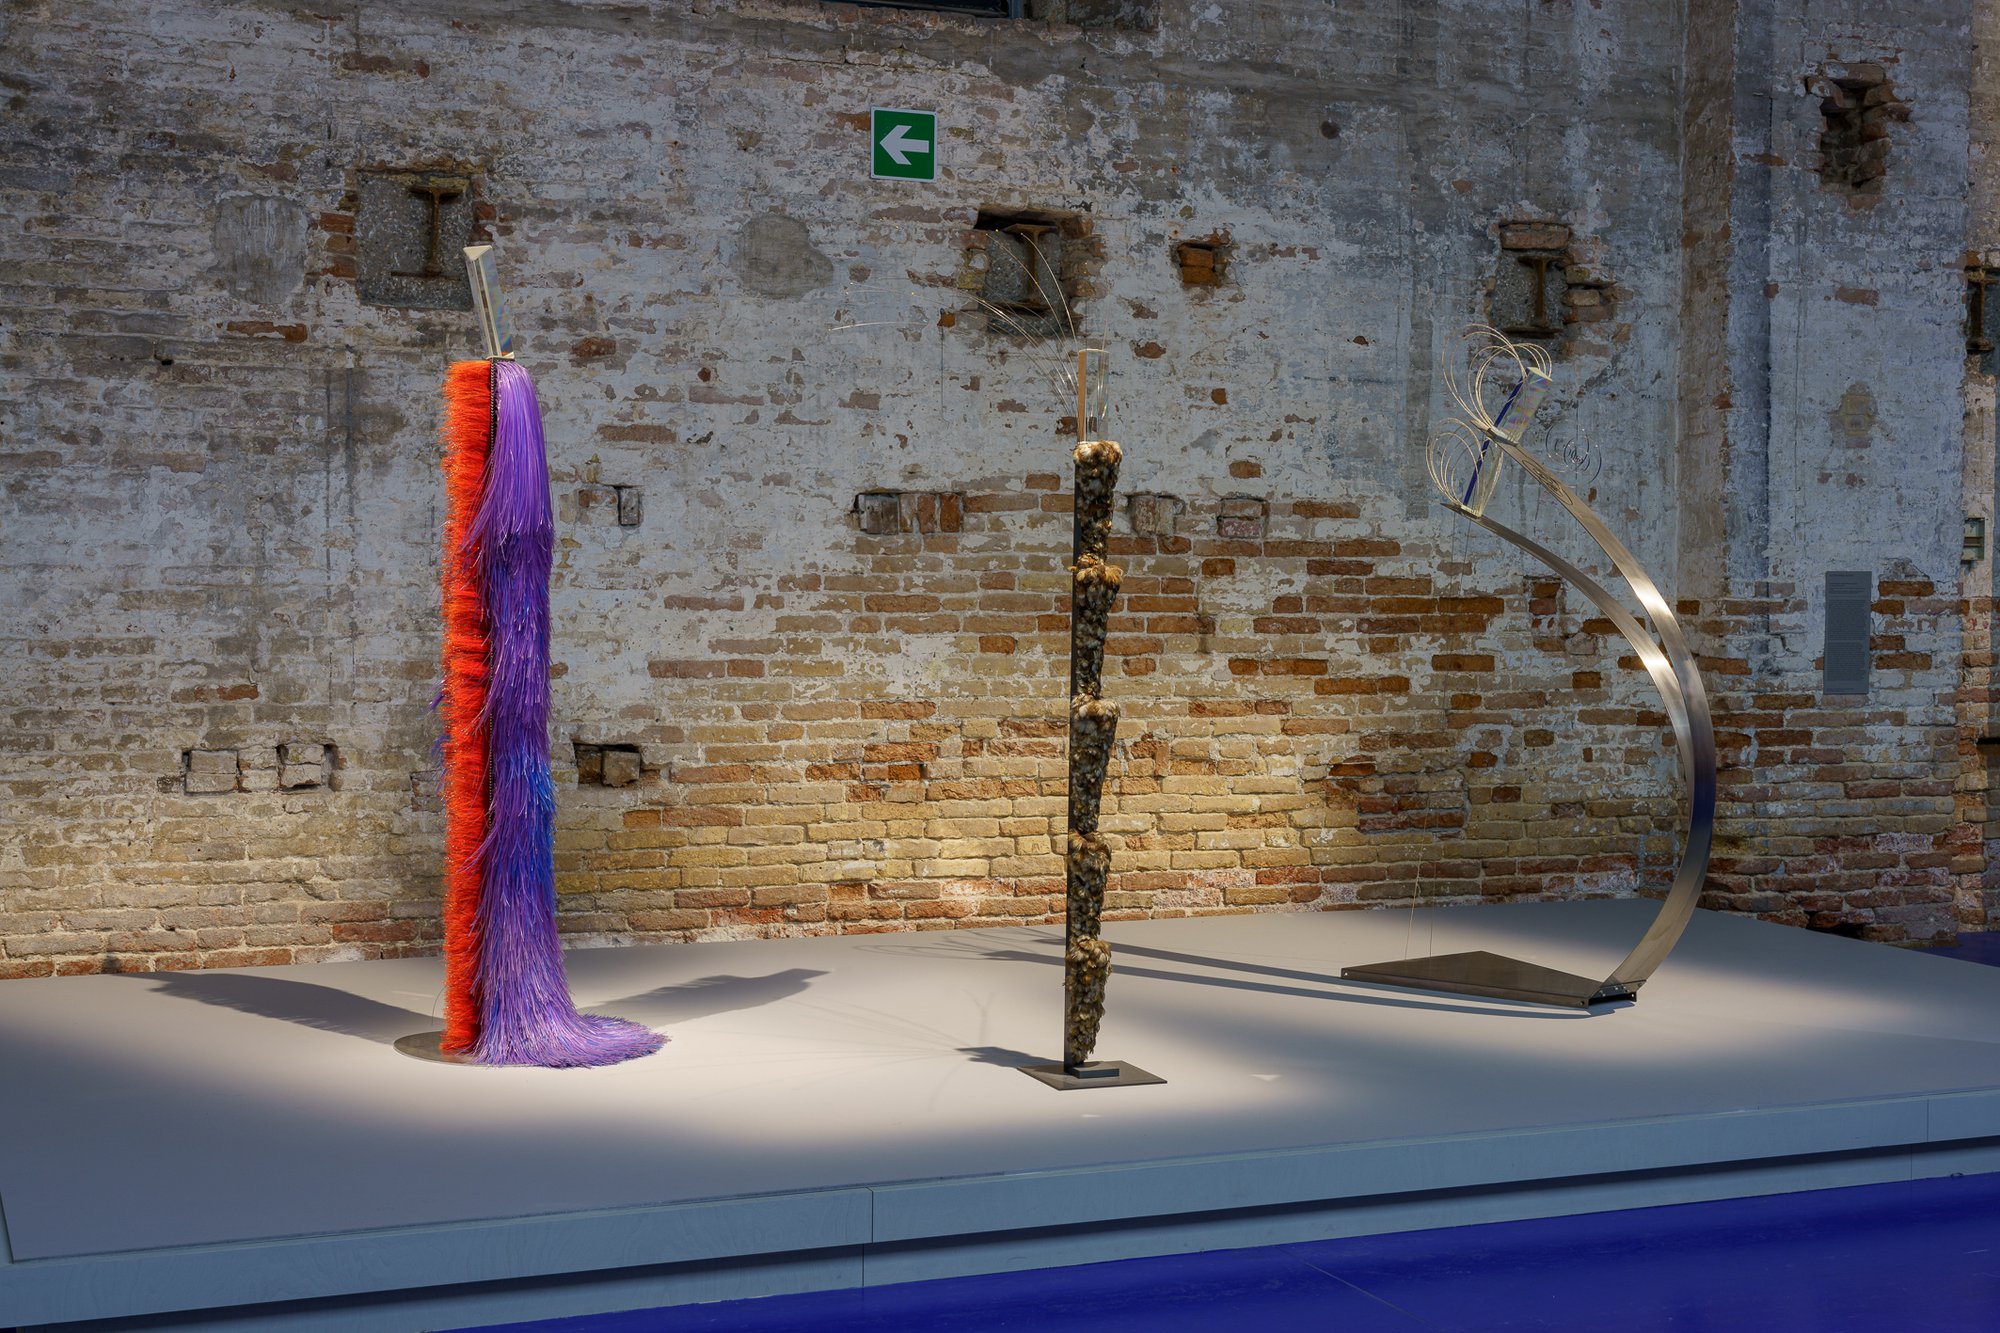 Installation view, The Milk of Dreams, 59th International Art Exhibition – La Biennale di Venezia, Venice, 2022